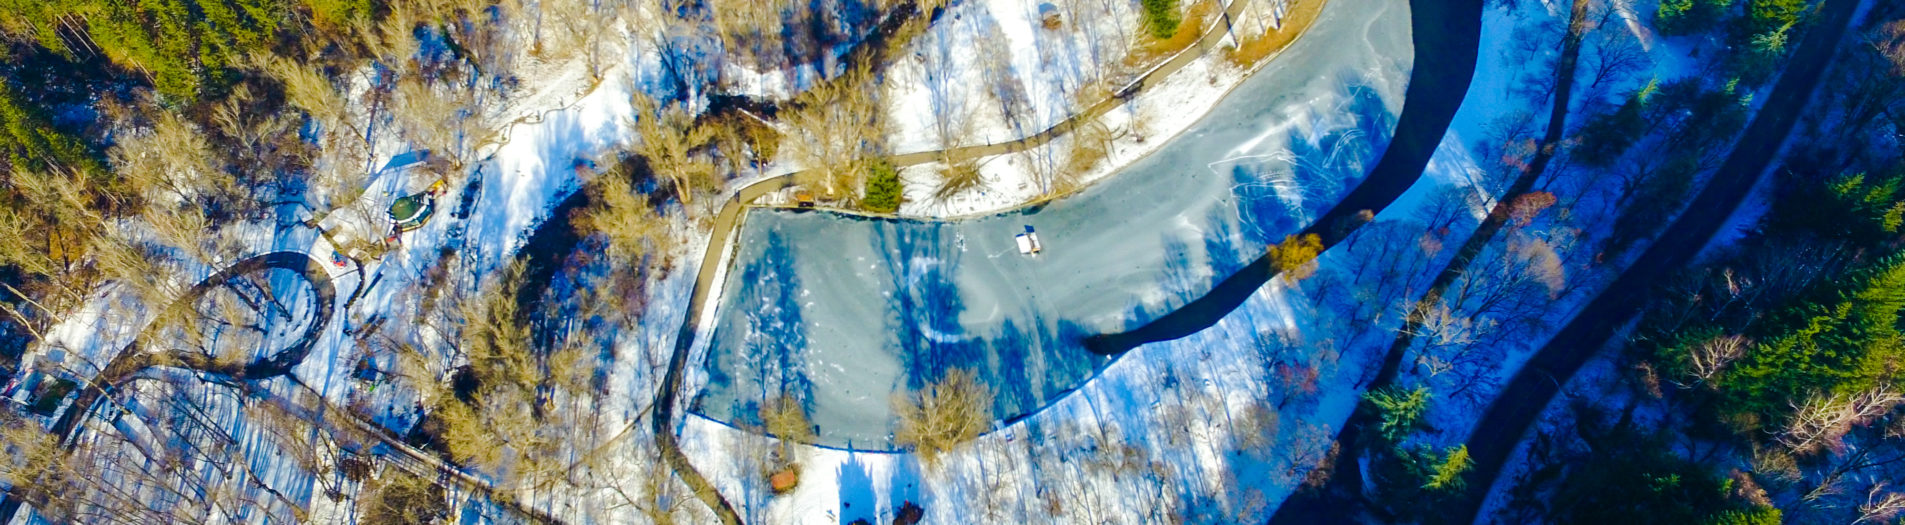 Замръзналото езеро, намиращо се в парк Бачиново, Благоевград